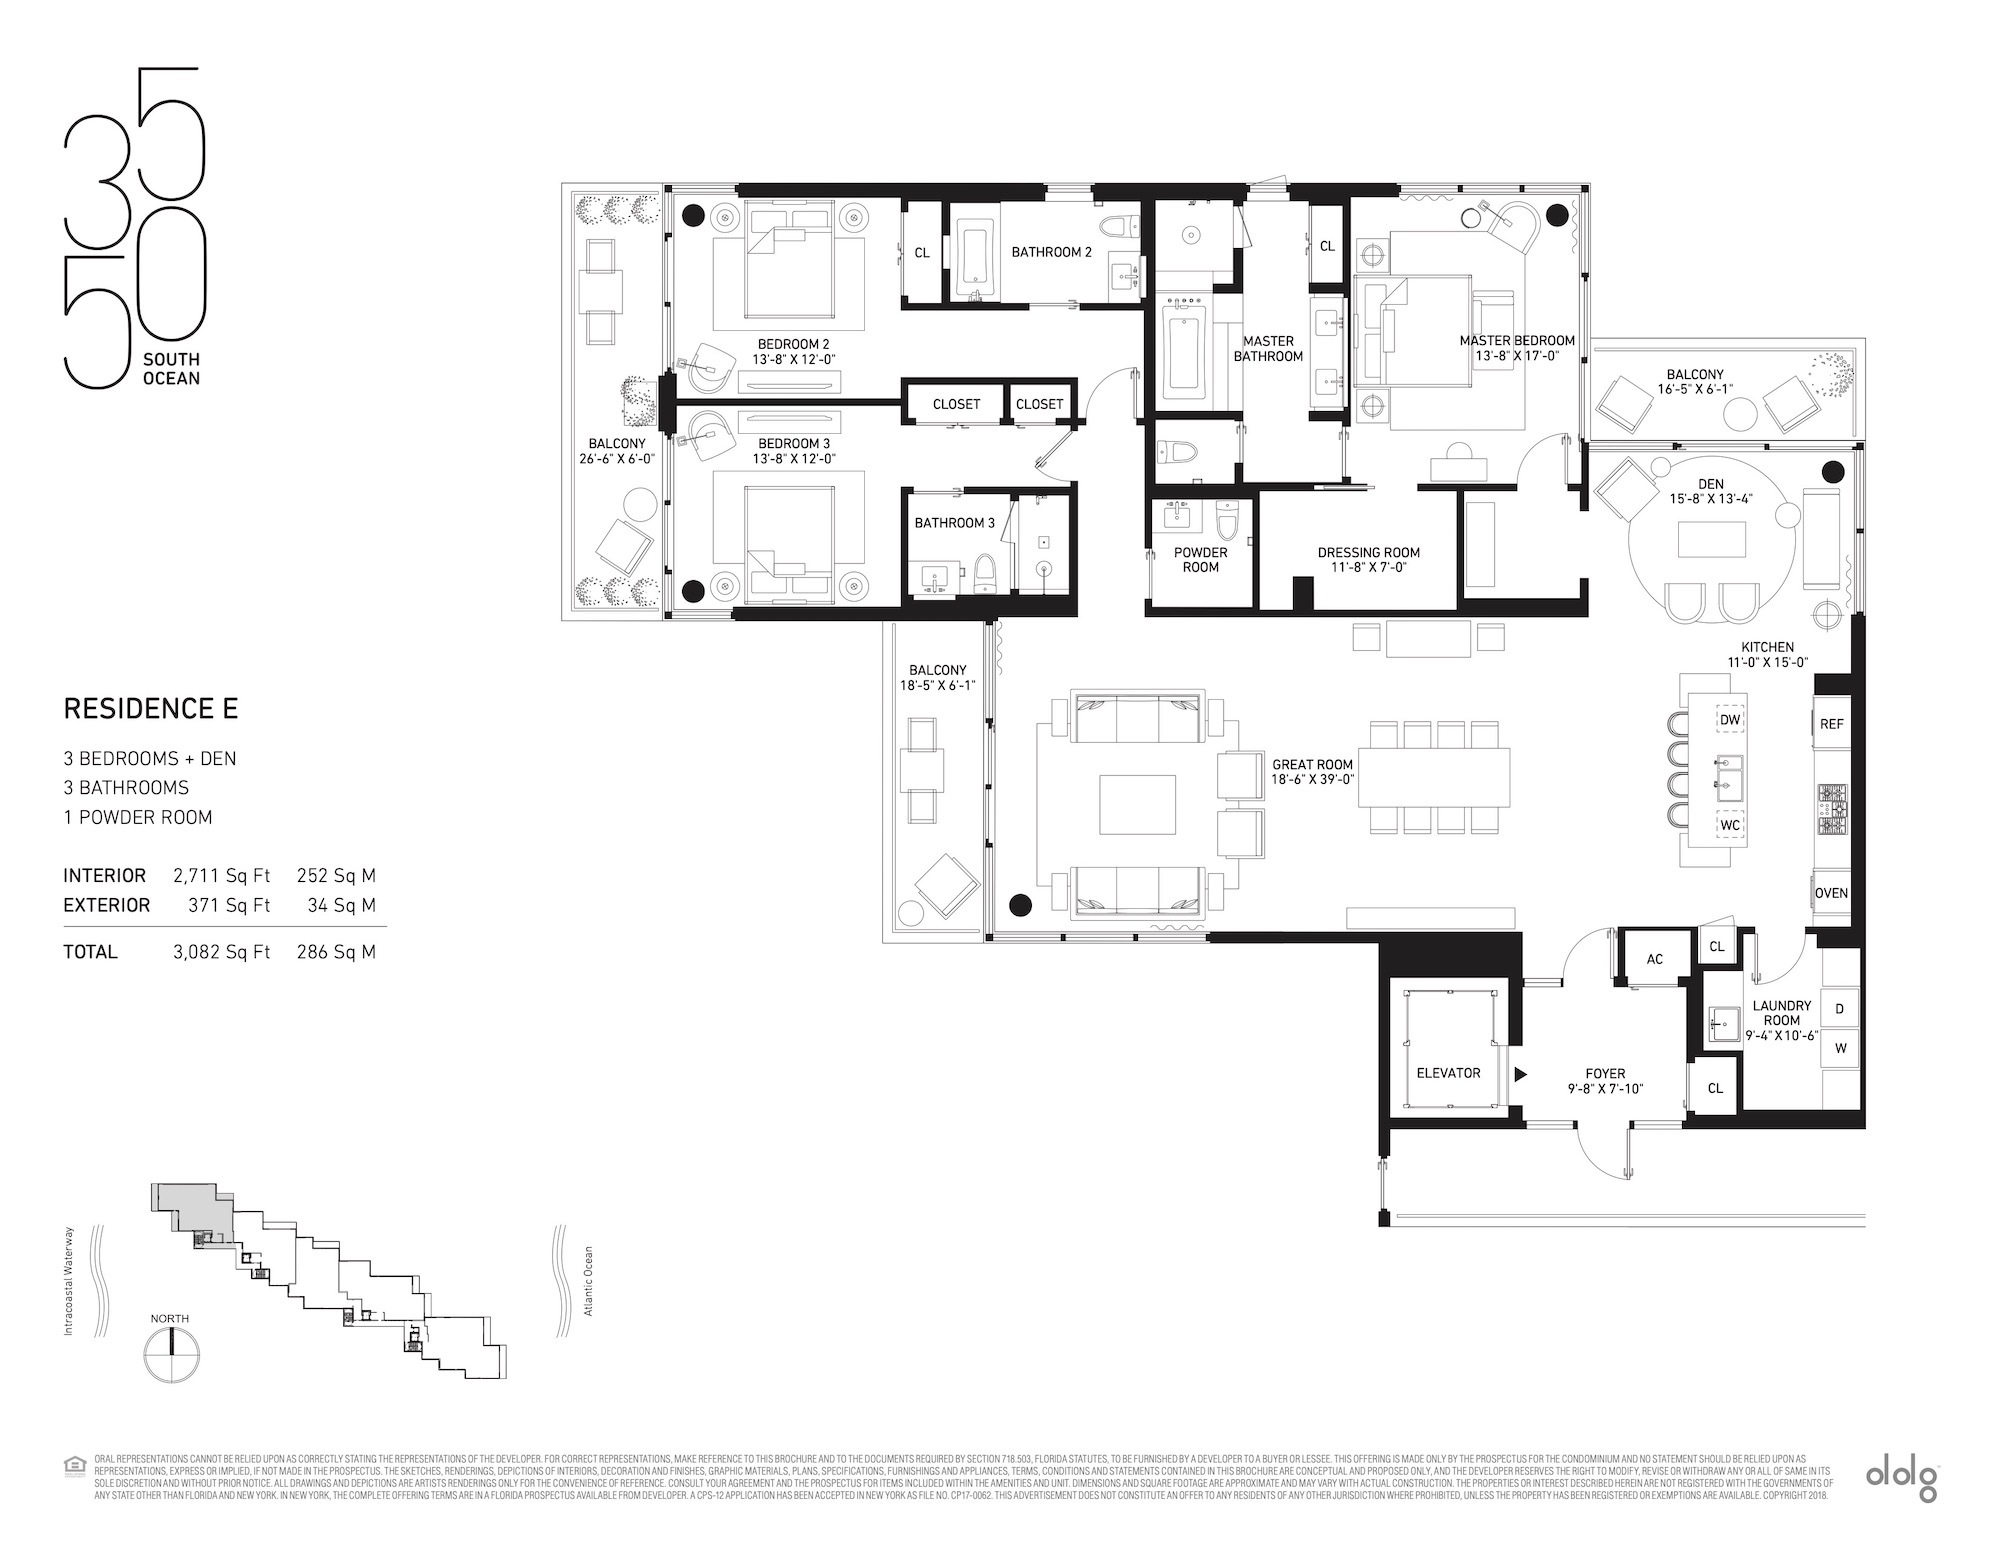 Floor Plan for 3550 South Ocean Floorplans, Residence E